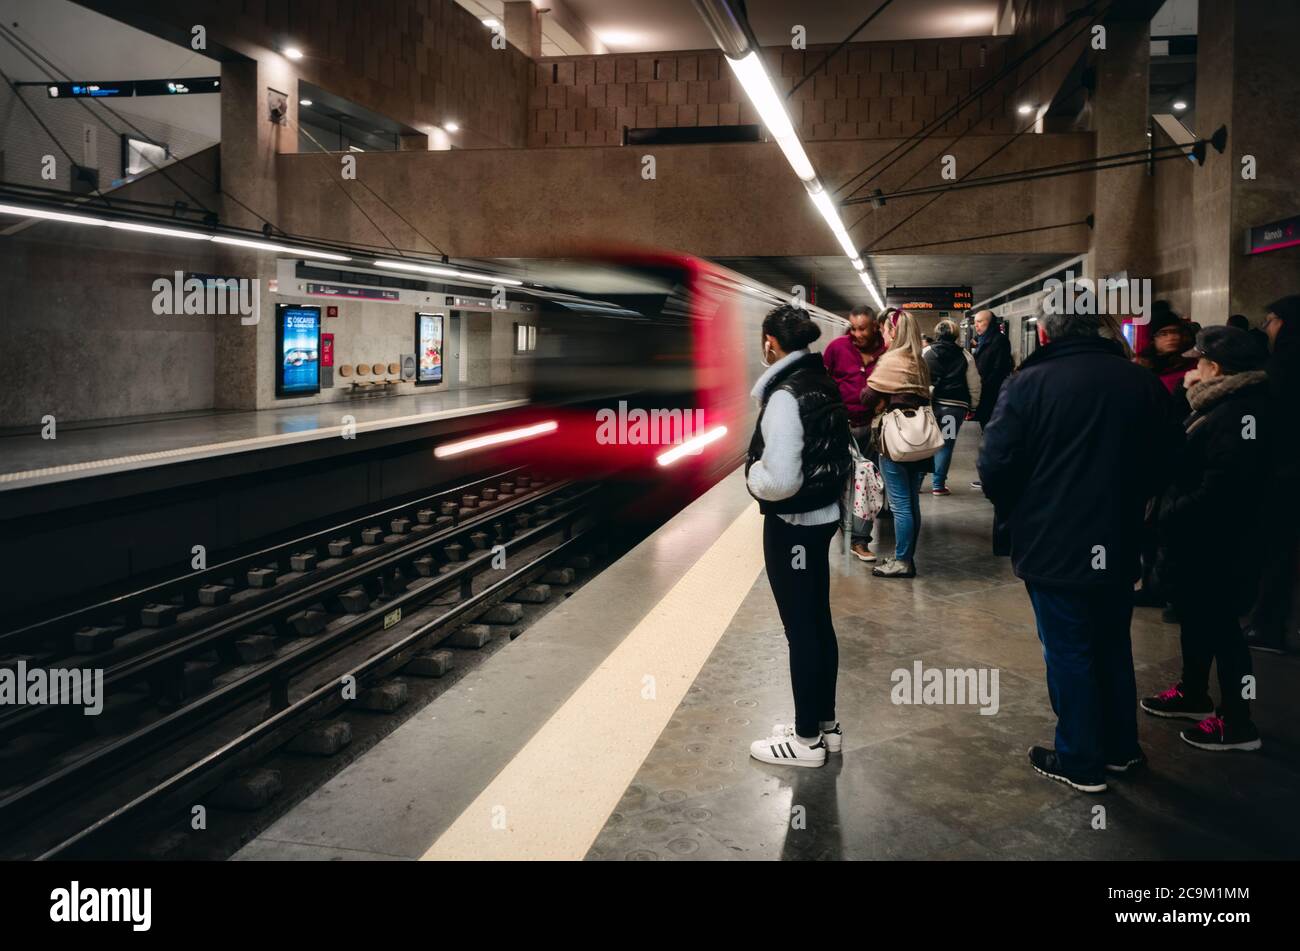 LISBONA, PORTOGALLO - 2 FEBBRAIO 2019: Persone in attesa sulla piattaforma della stazione della metropolitana Alameda a Lisbona, Portogallo, il 2 febbraio 2019, con un r Foto Stock